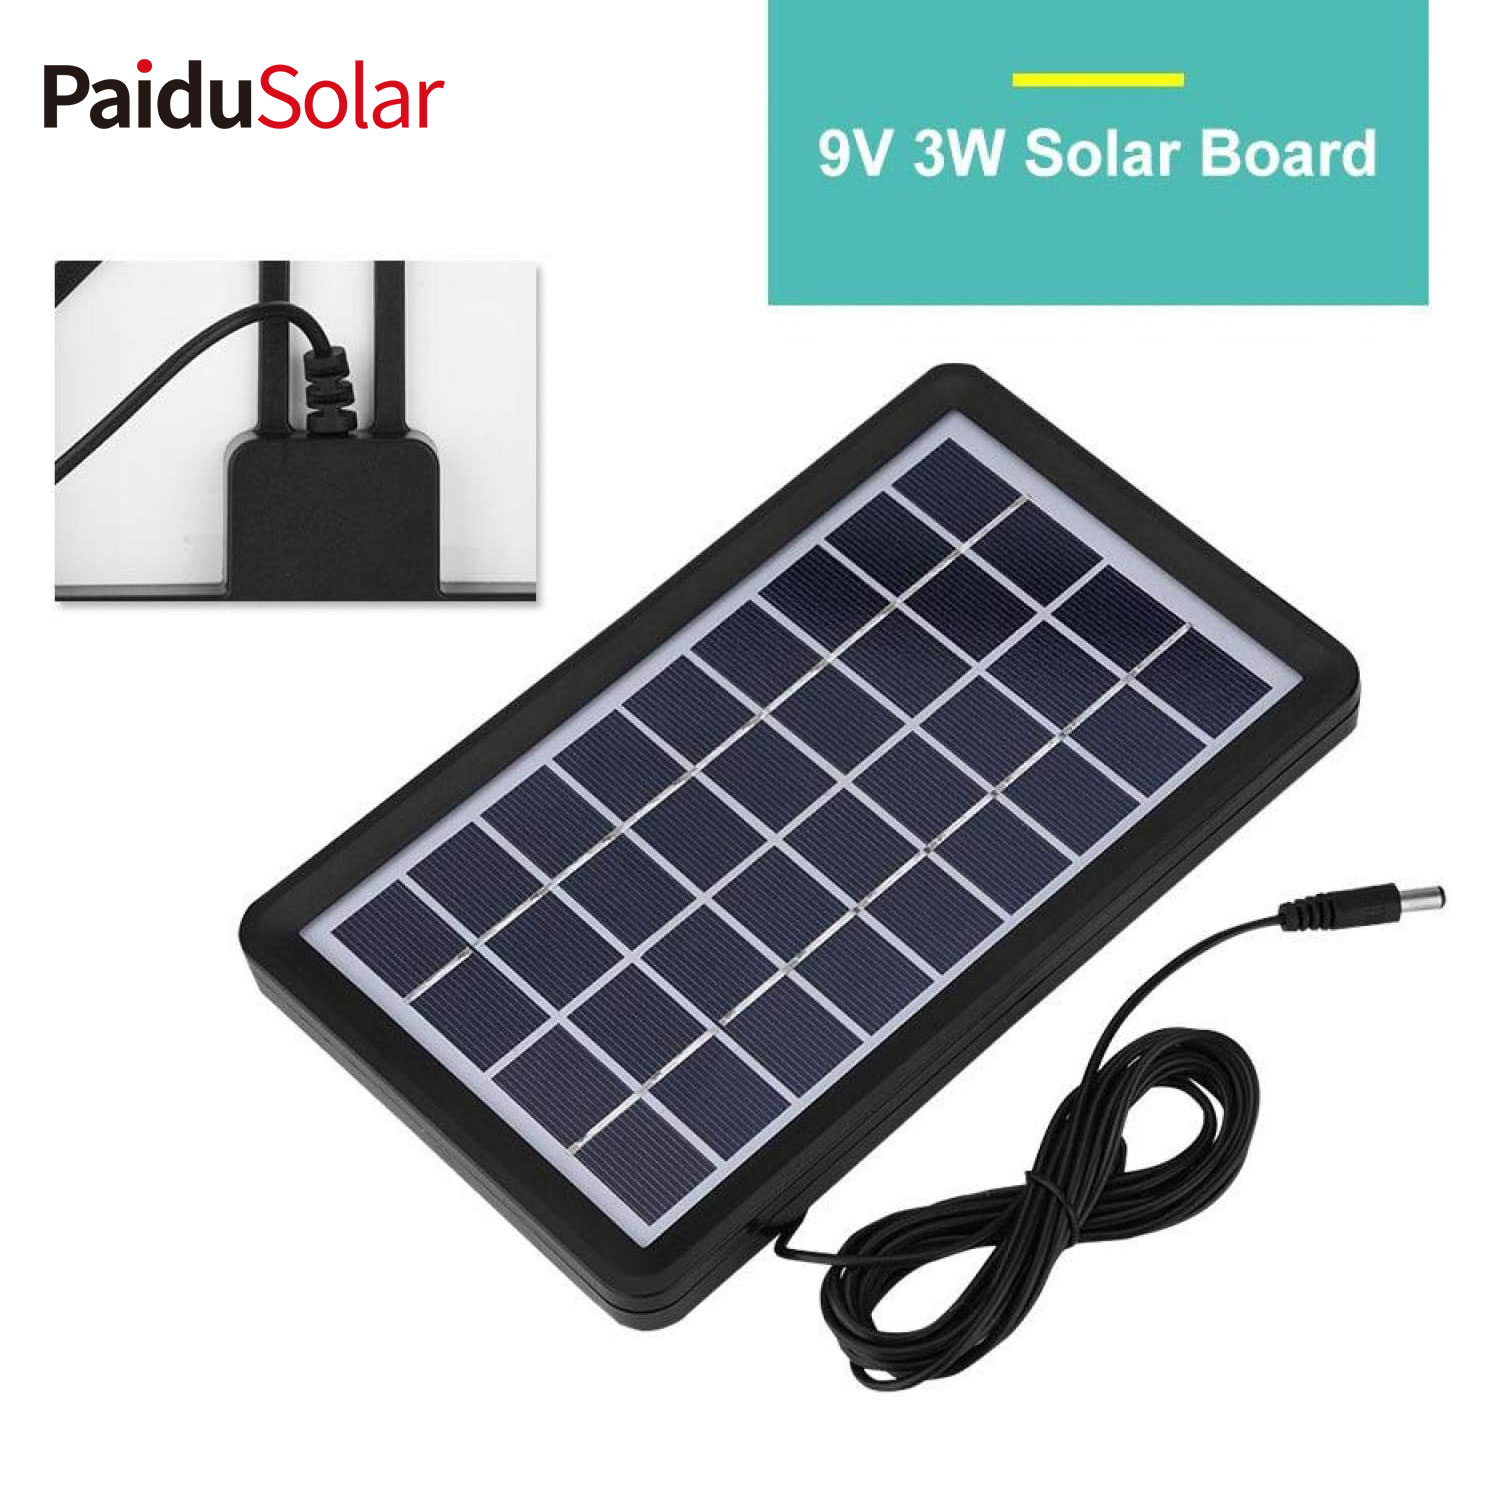 PaduSolar 9V 3W Poly Silicon Solar Panel Solar Cell ho an'ny Battery Charging Boat_2nno